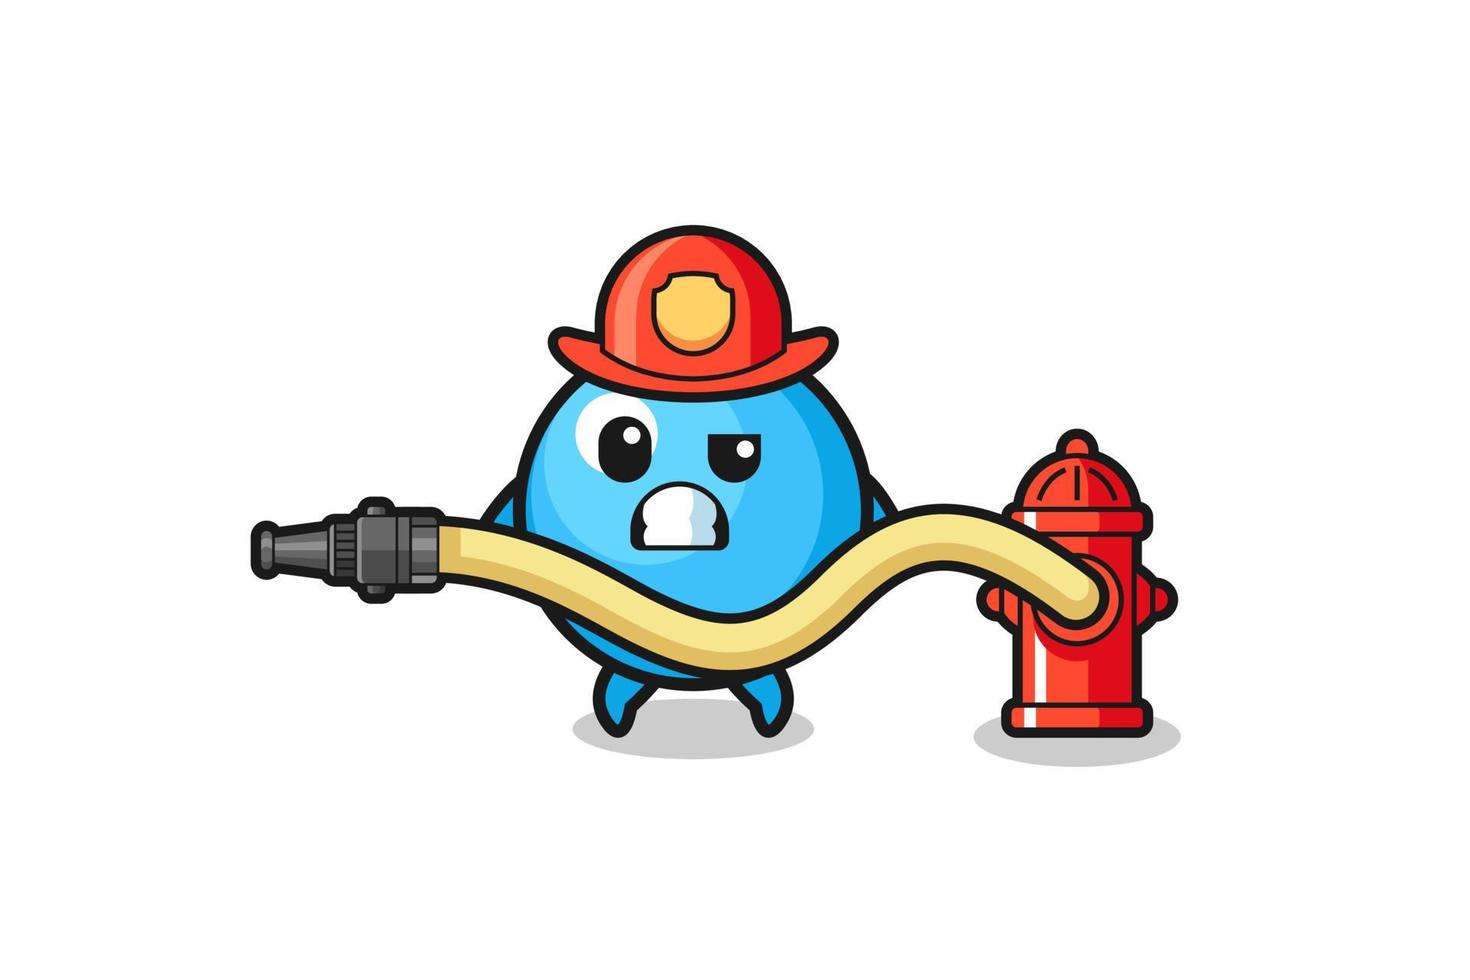 gum ball cartoon as firefighter mascot with water hose vector